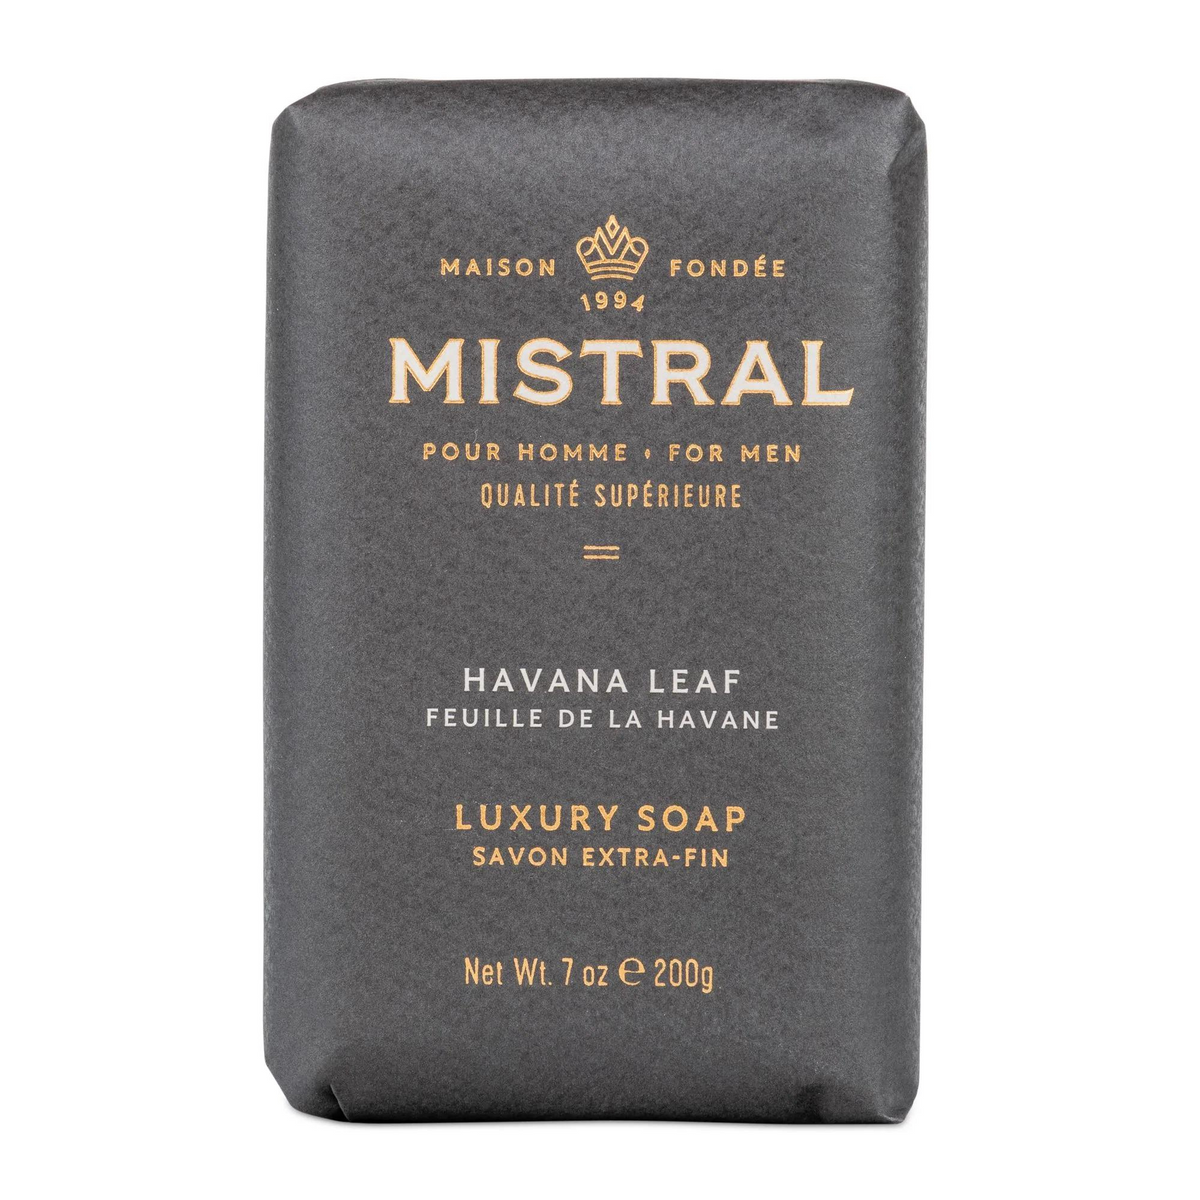 Primary Image of Mistral Havana Leaf Bar Soap (7 oz)